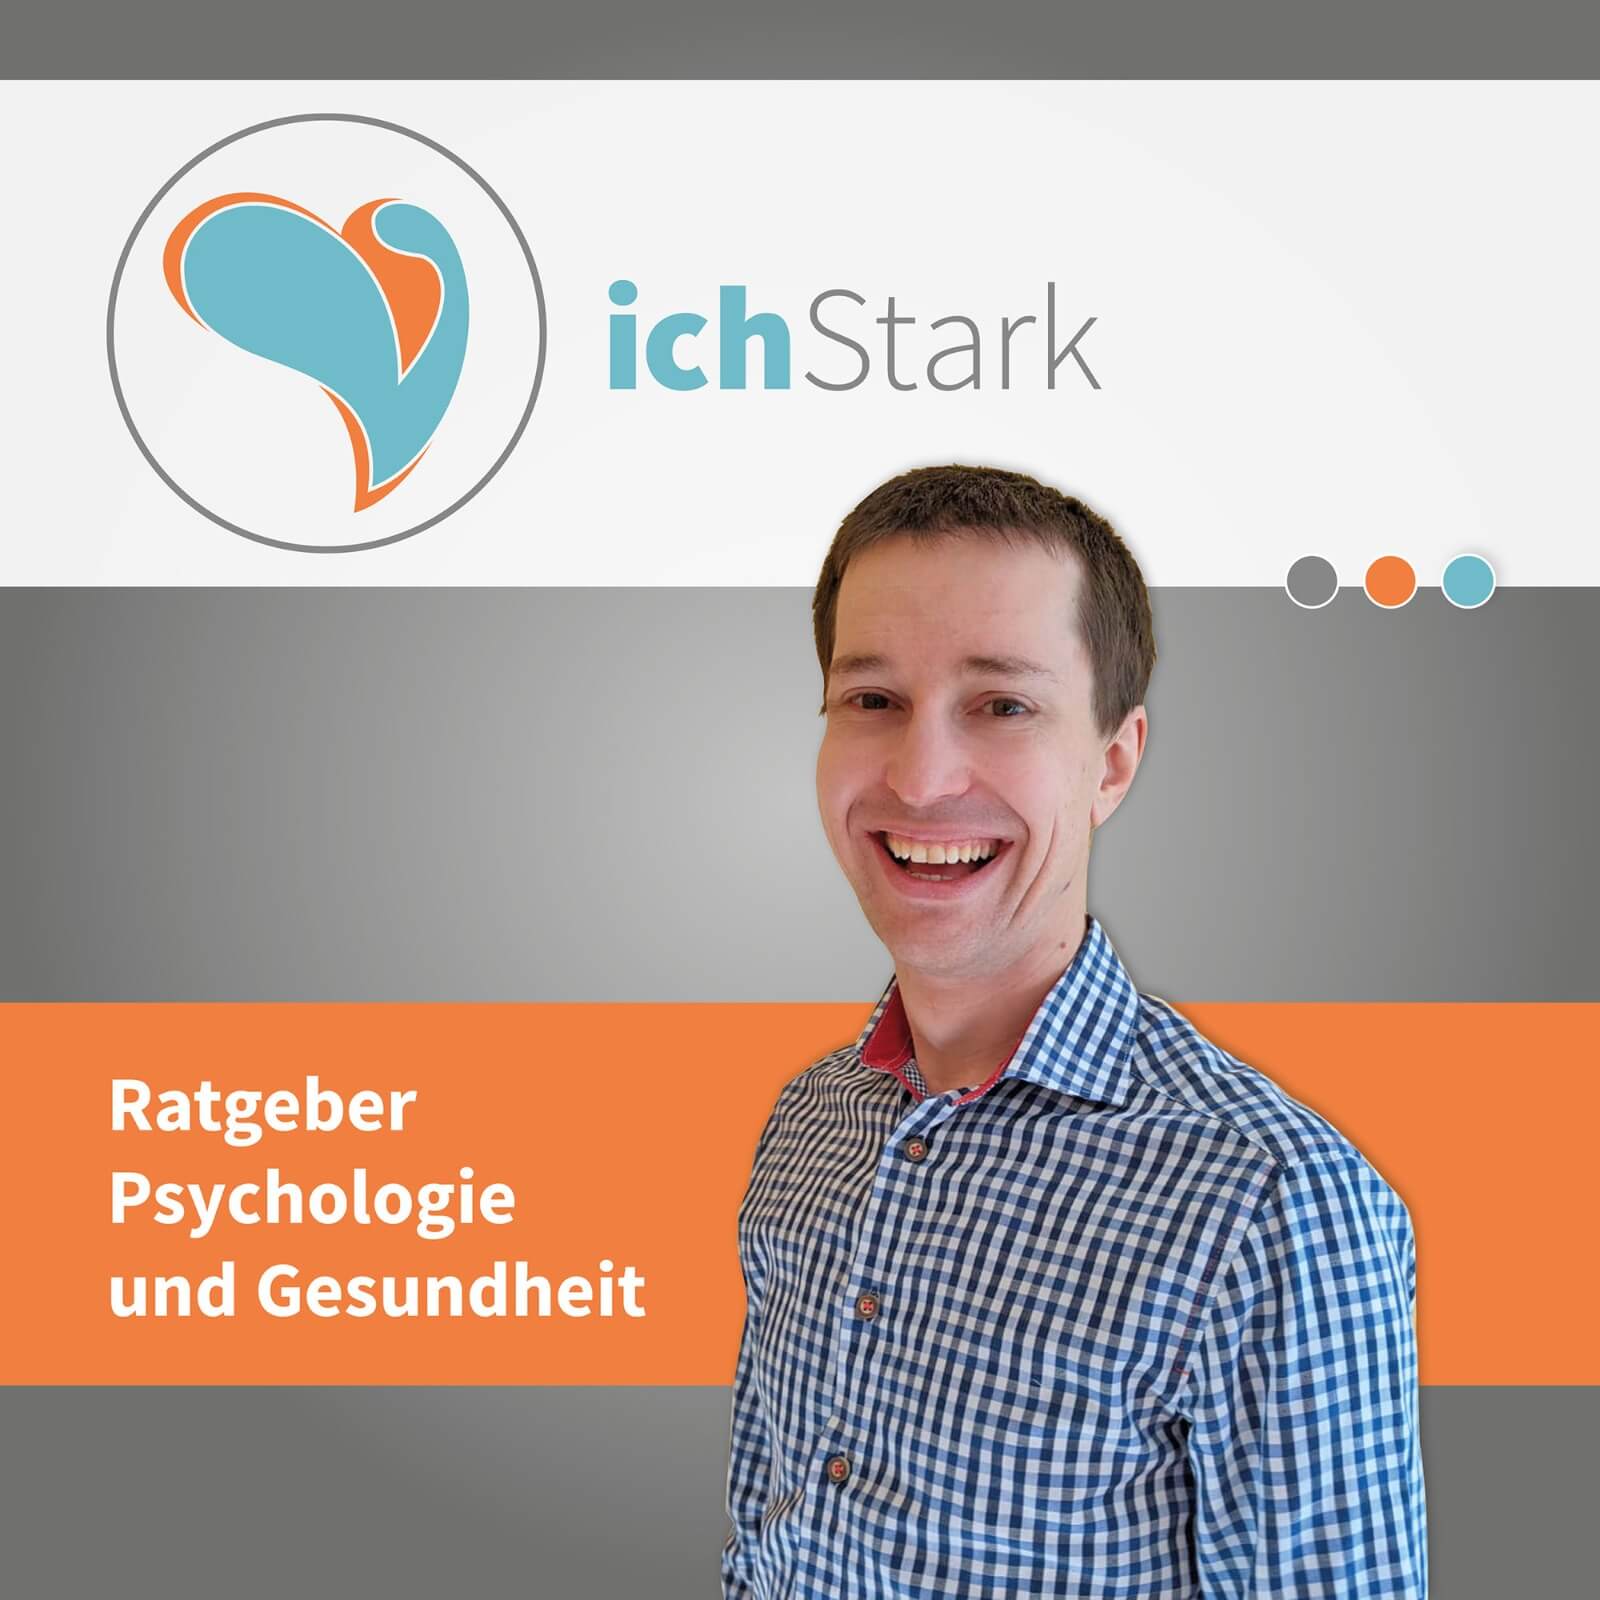 You are currently viewing Mein neuer Podcast: ichStark, der Ratgeberpodcast zu Psychologie, Gesundheit und Lebenszufriedenheit